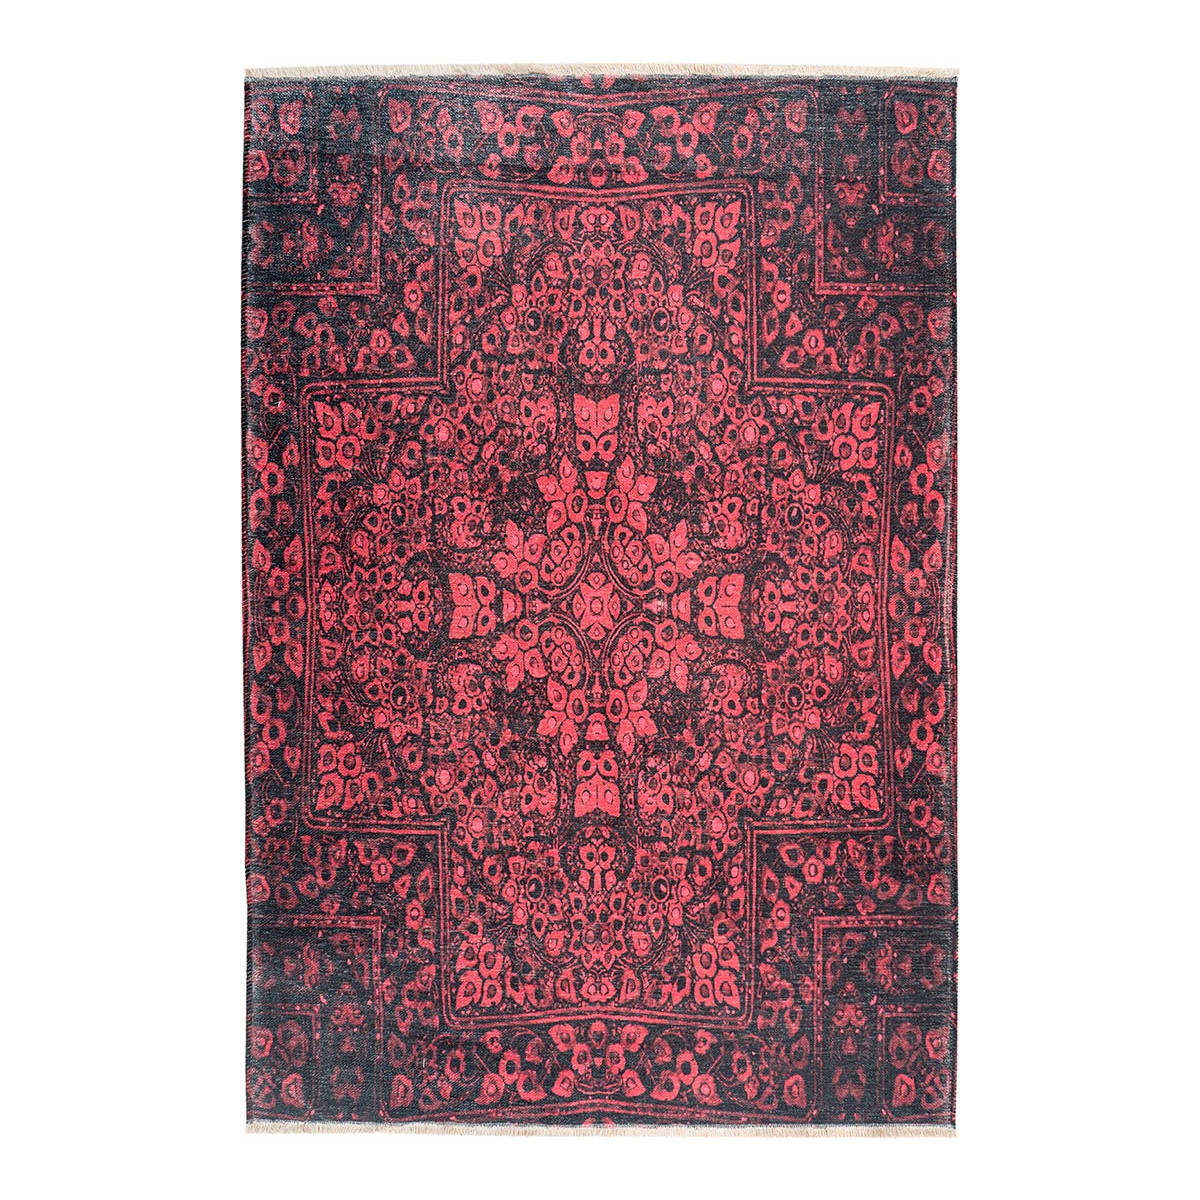 Tapis ethnique en polyester rubis 115x170